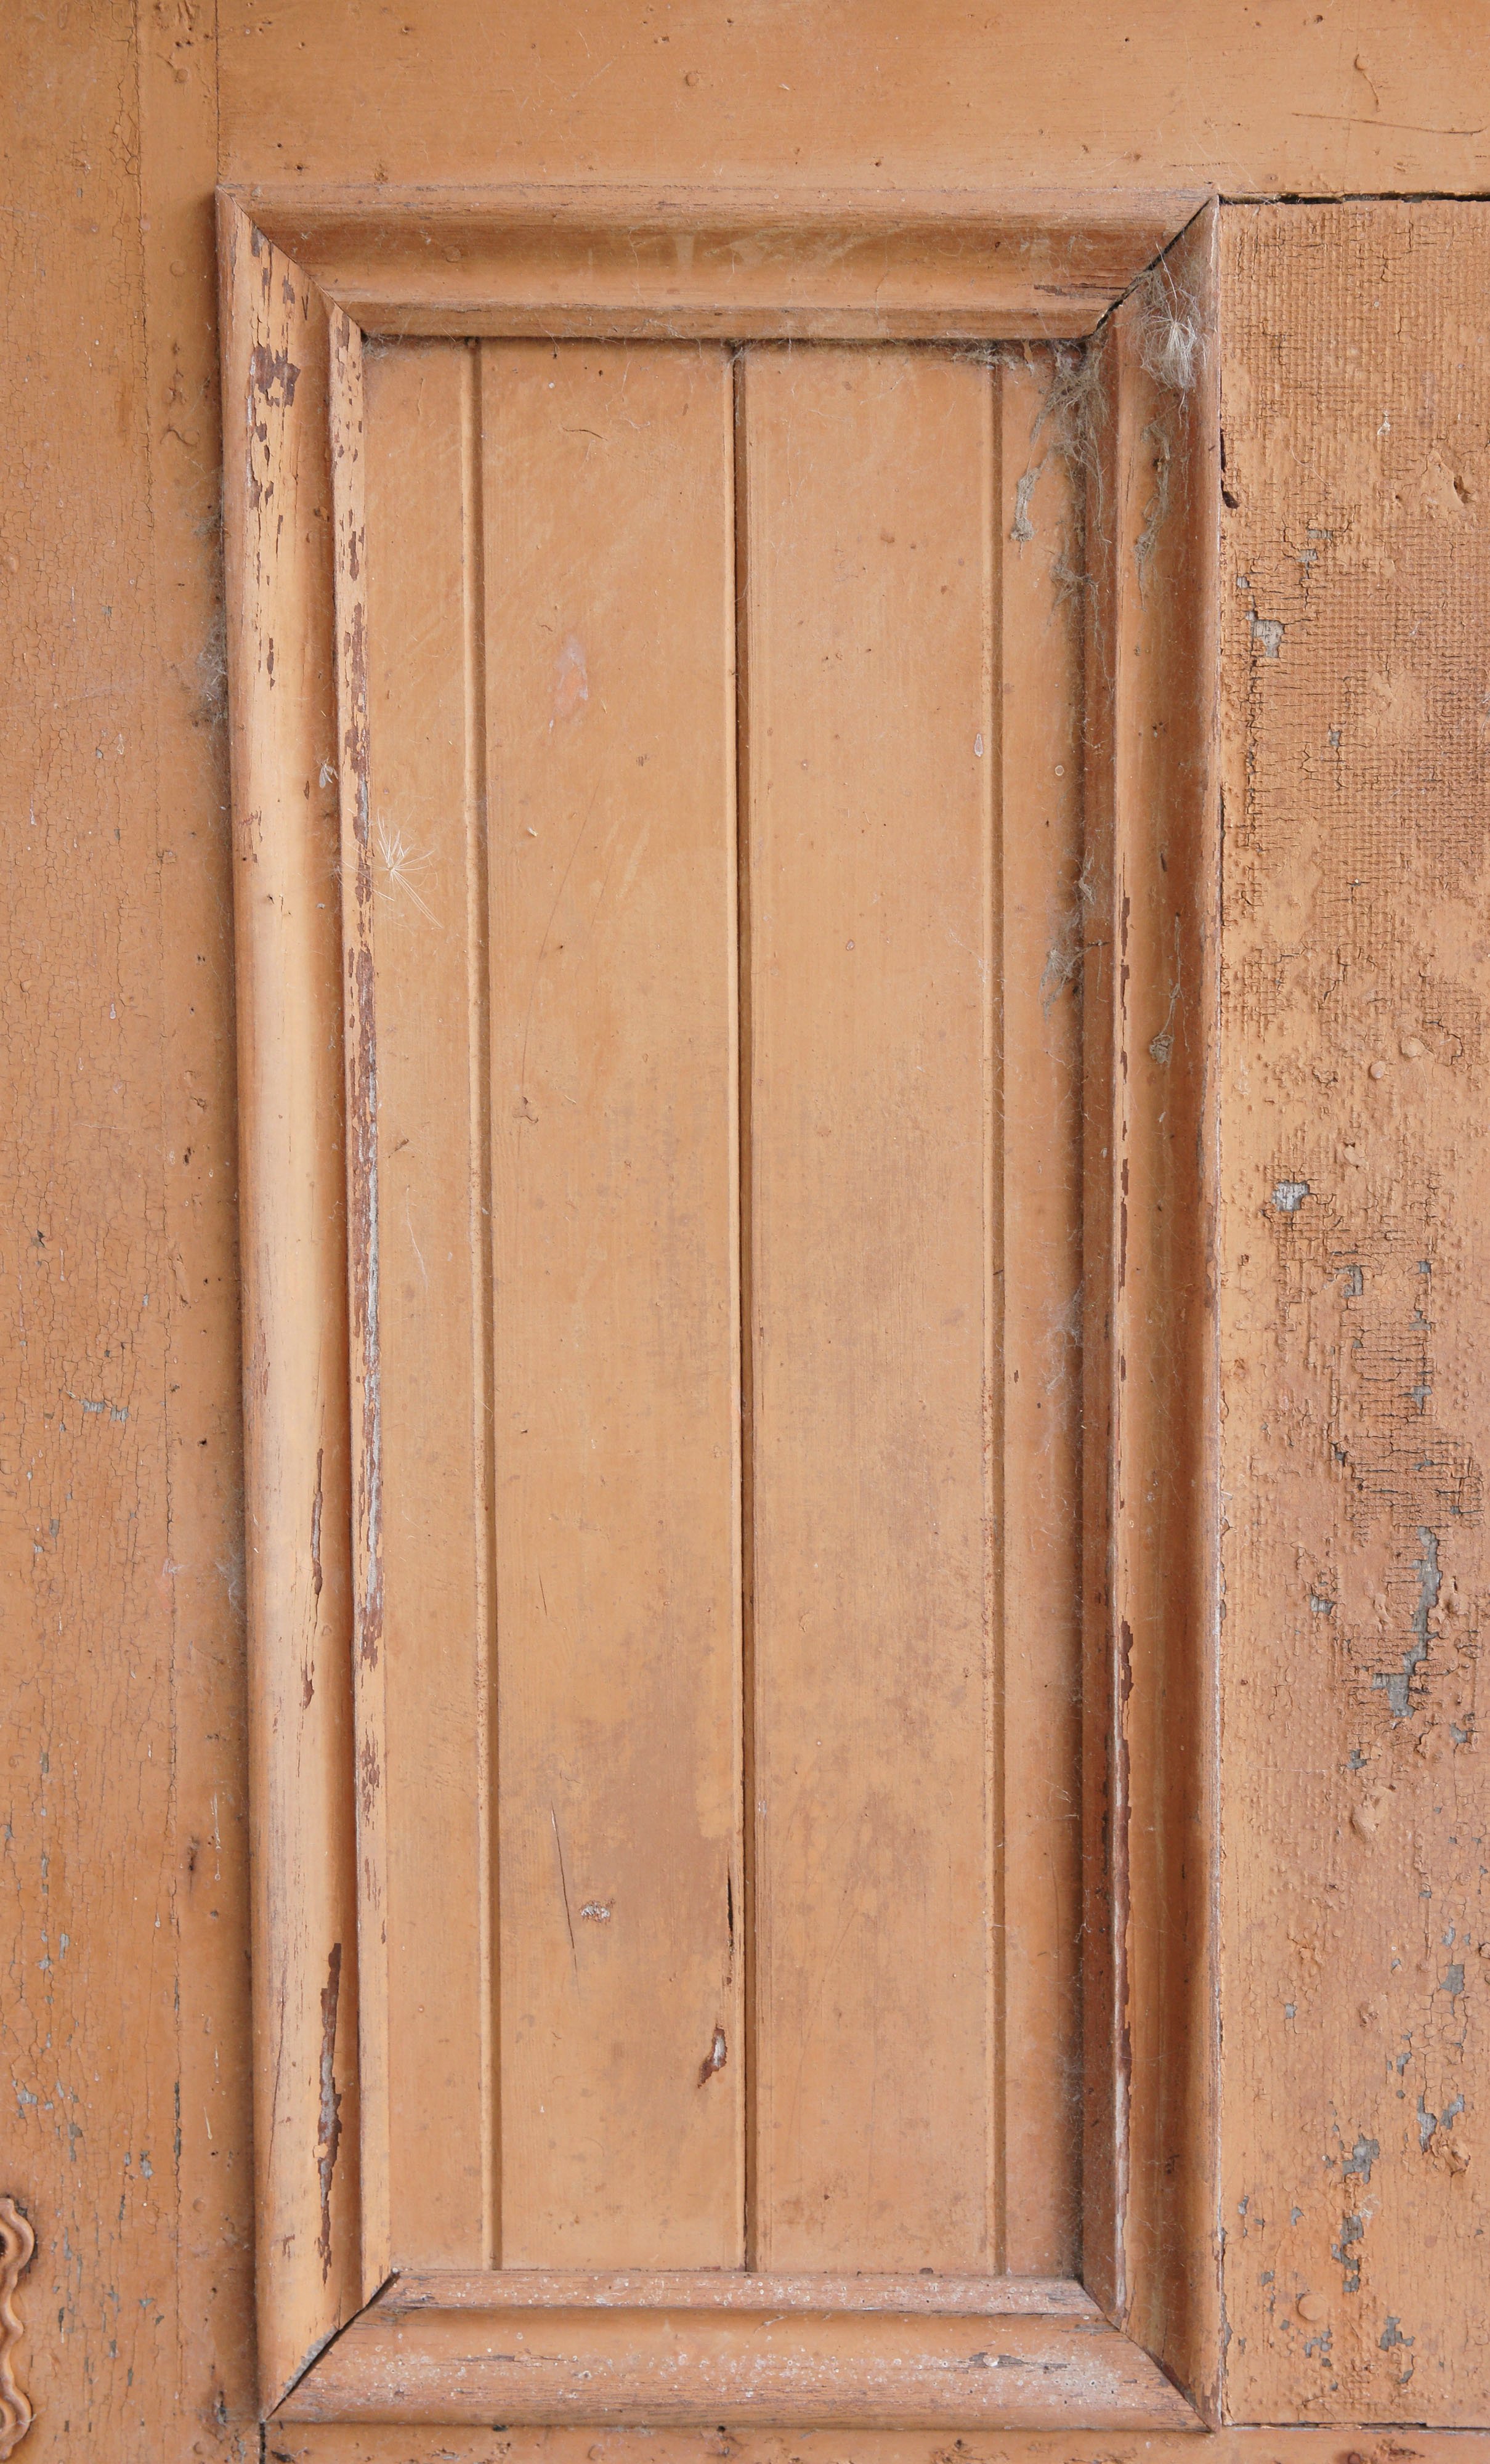 Wooden Frame In The Door Background Texture | Www.myfreetextures.com ...